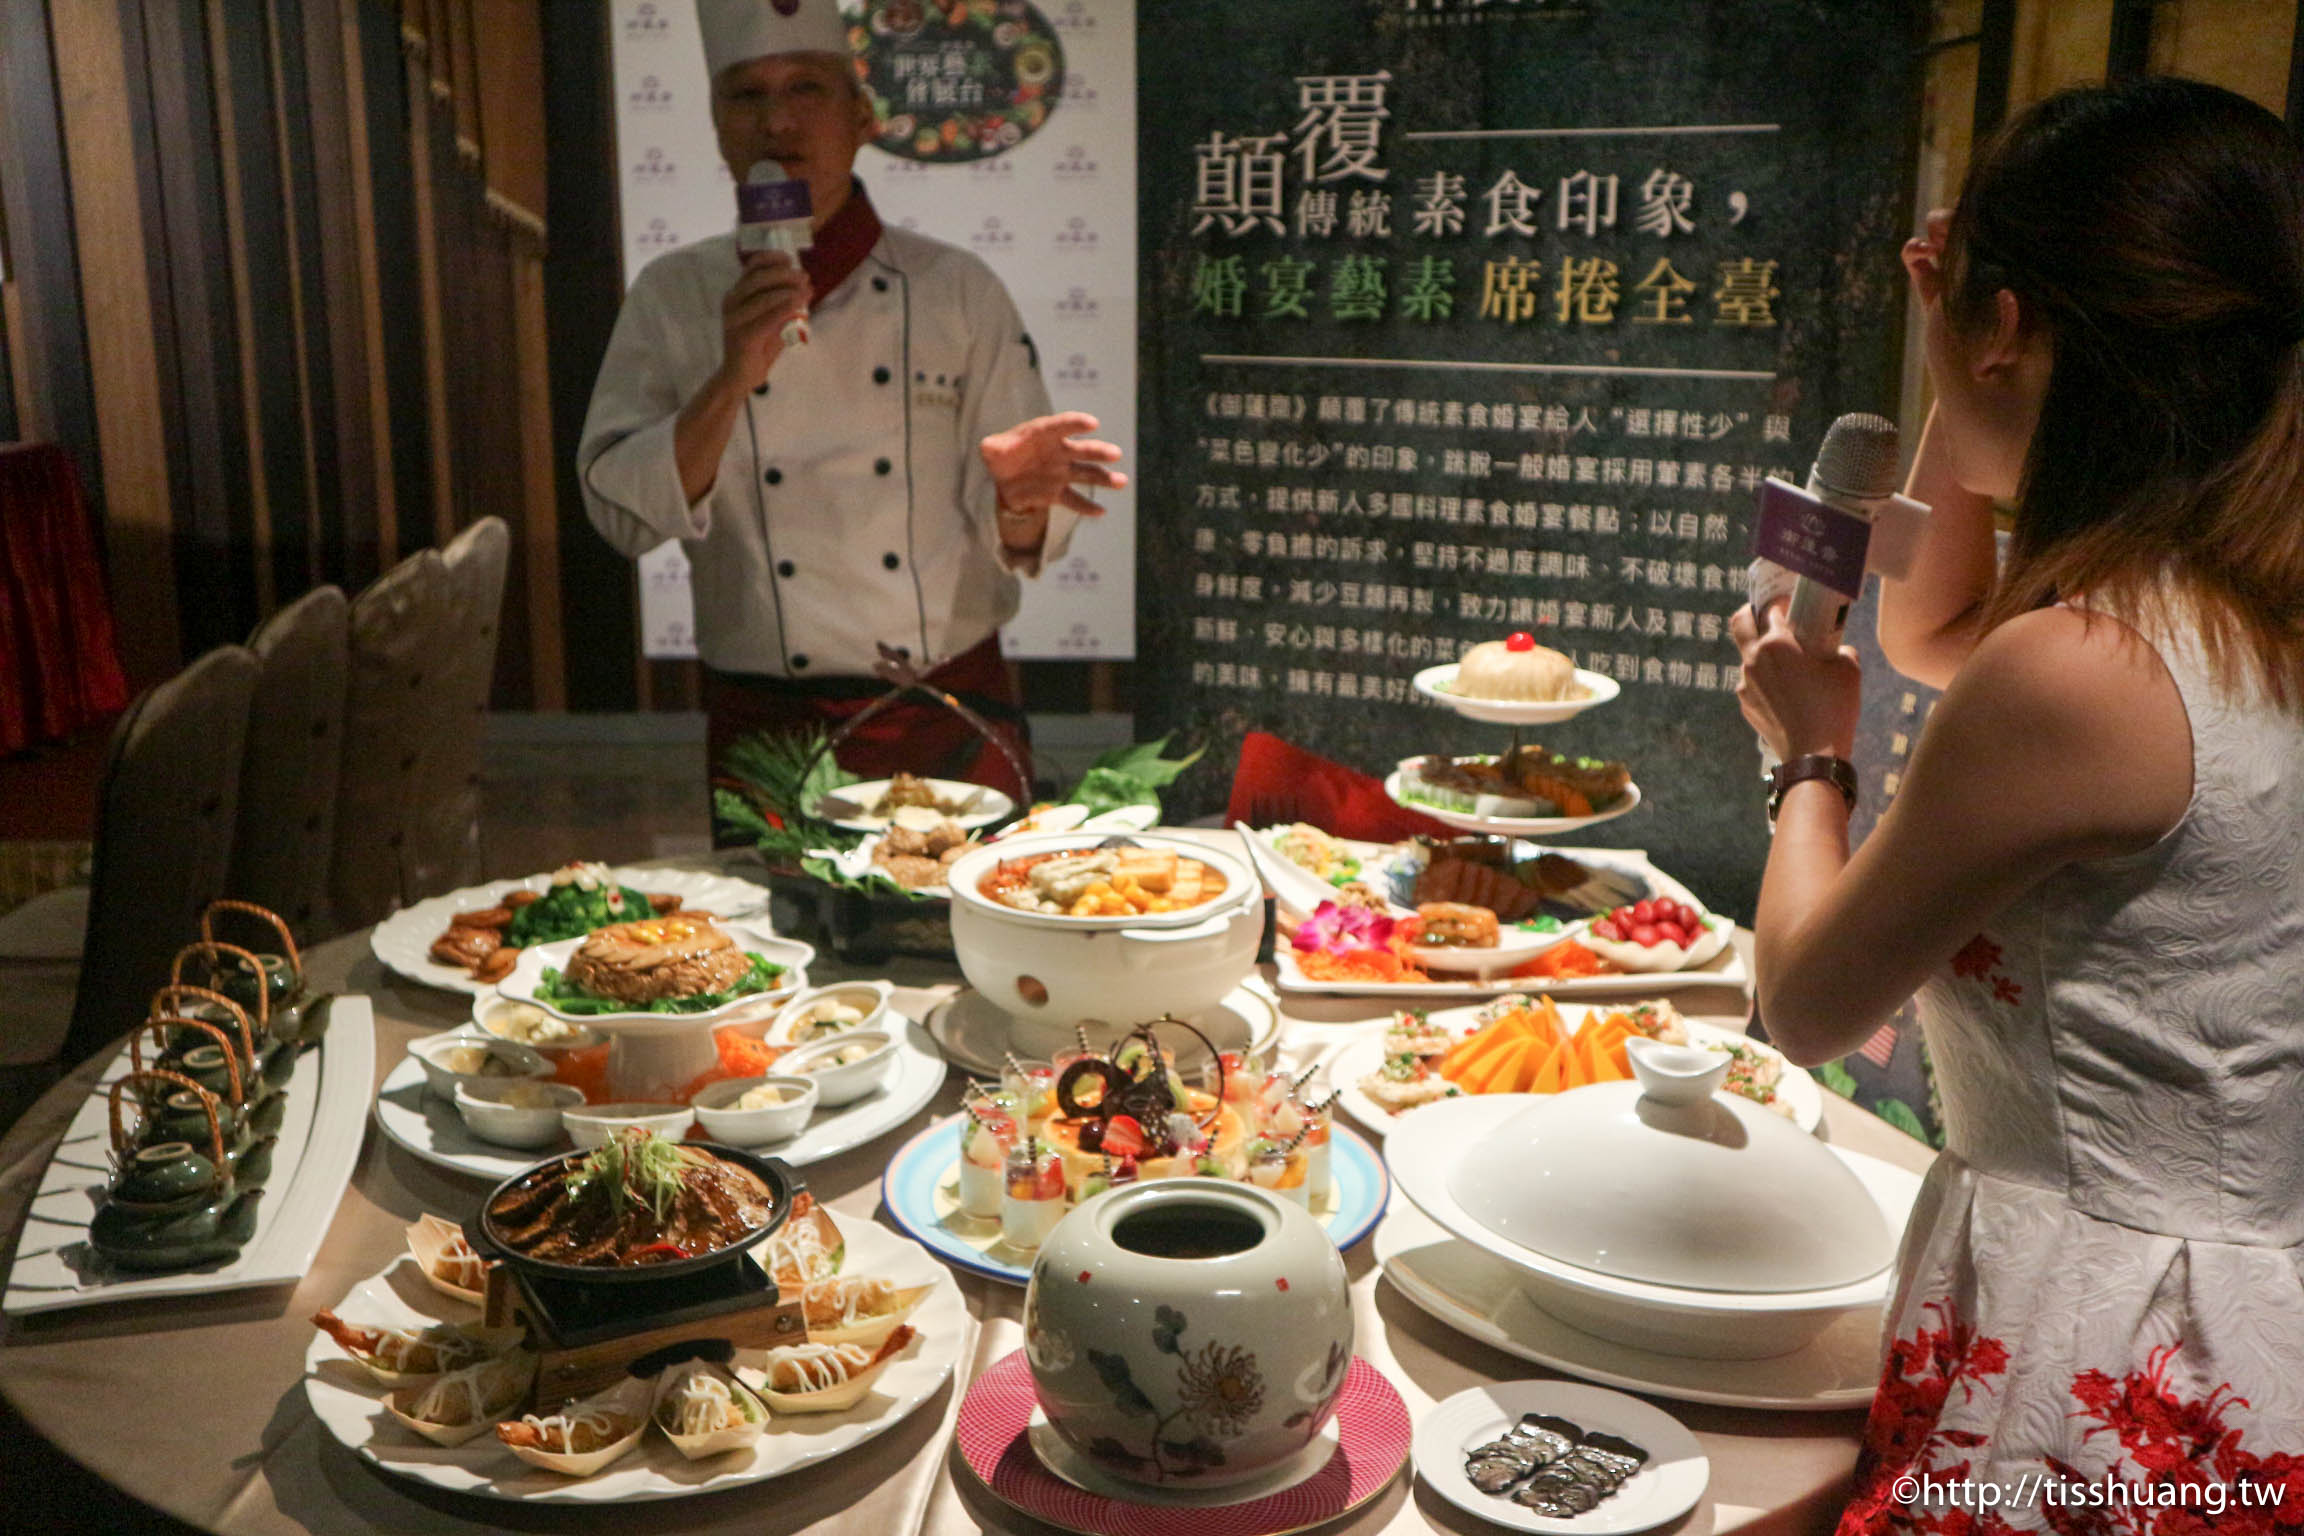 御蓮齋,素食辦桌,捷運南京三民站美食,台北最好吃的素食餐廳 @TISS玩味食尚